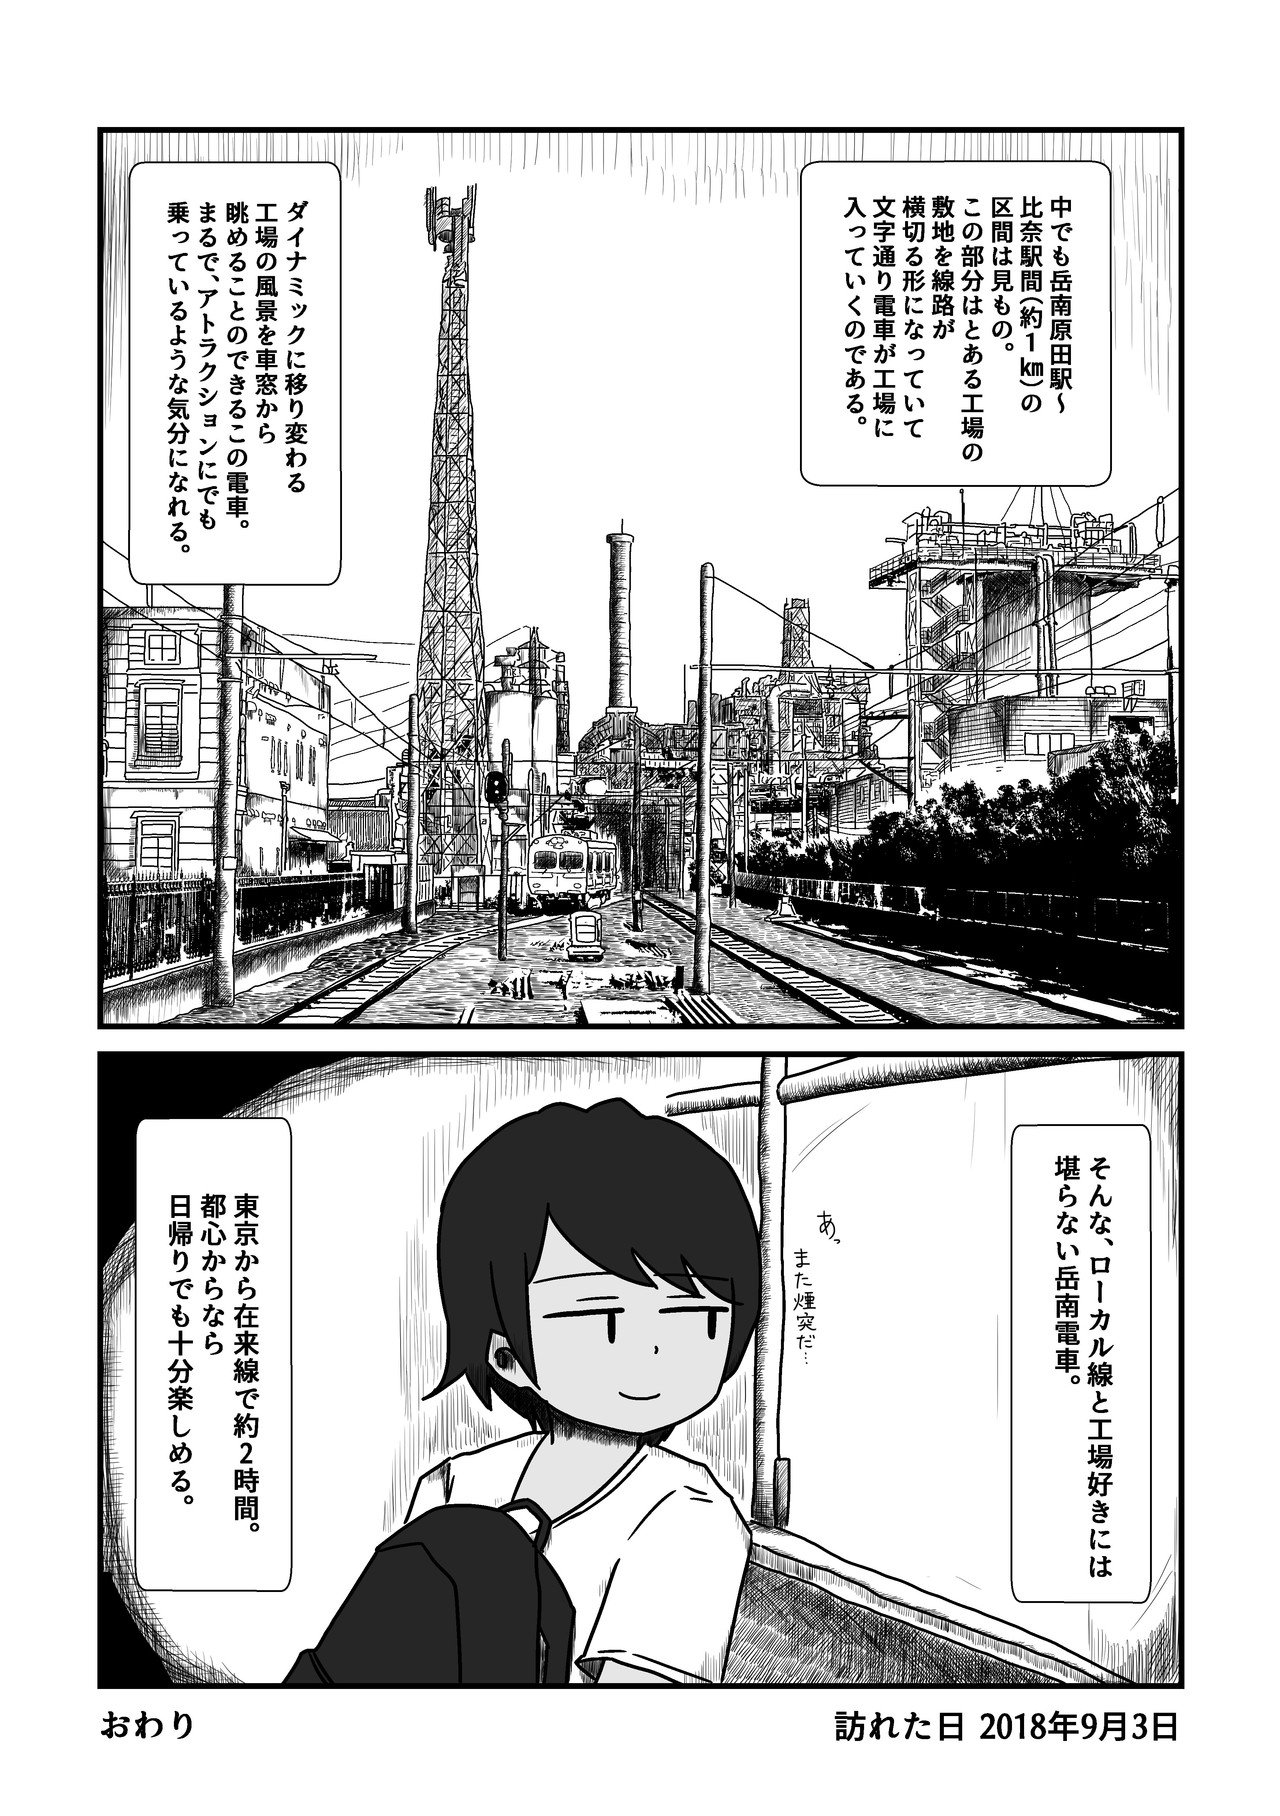 2019.4.14_旅漫画_岳南電車２